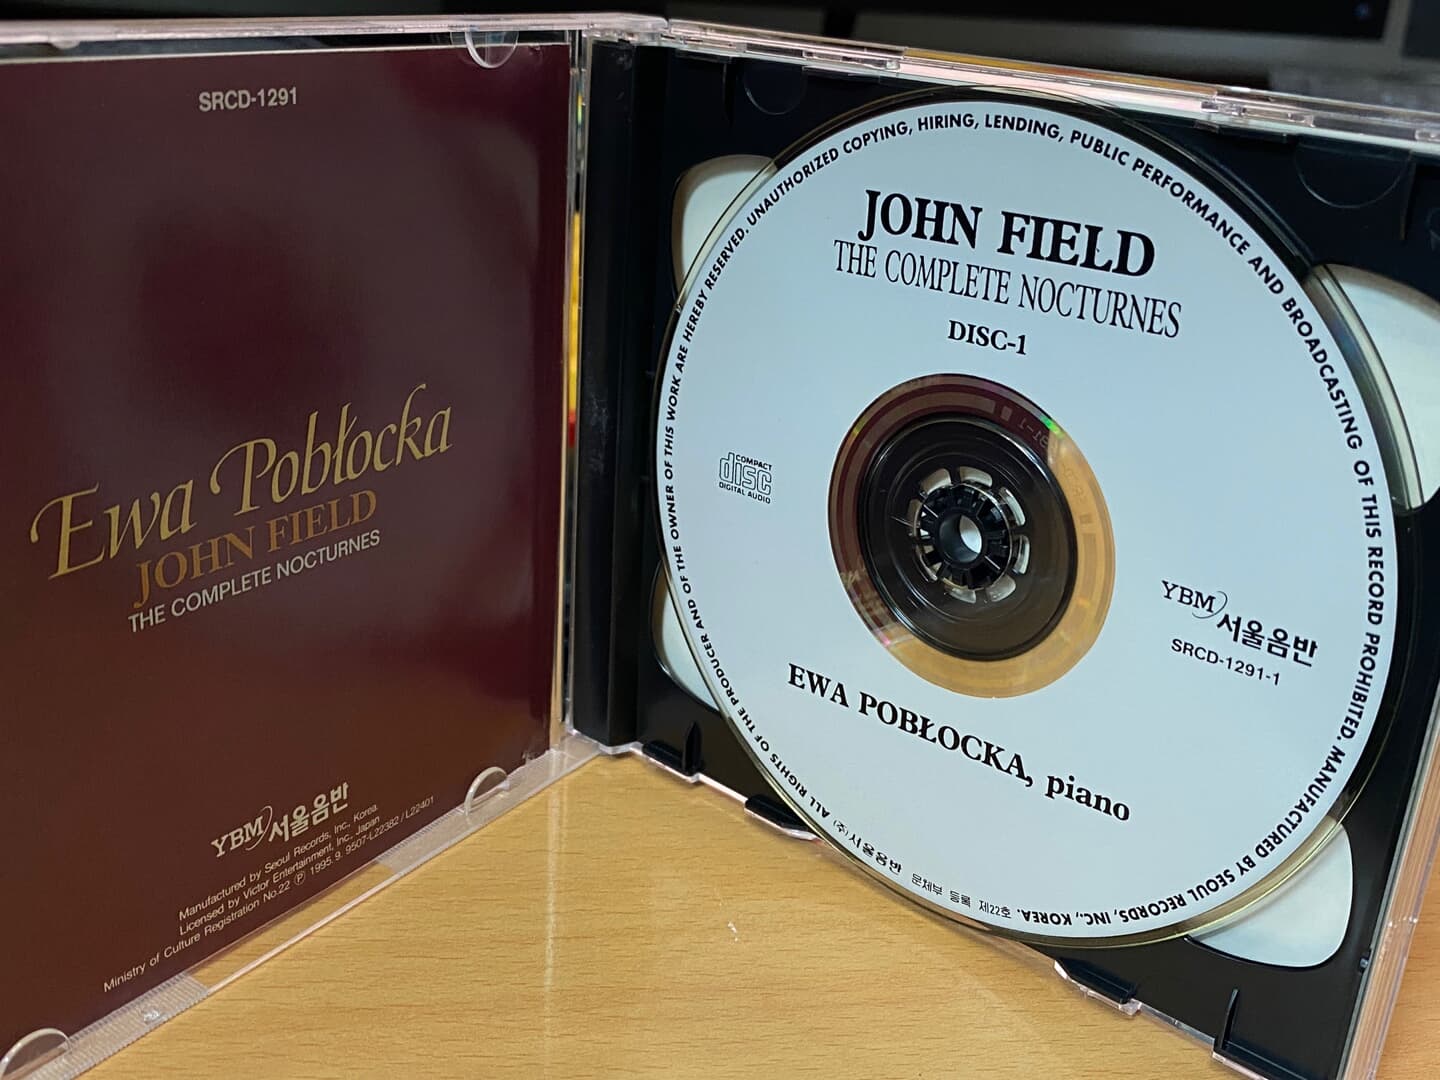 에바 포브오츠카 - Eva Poblocka - John Field The Complete Nocturnes 2Cds